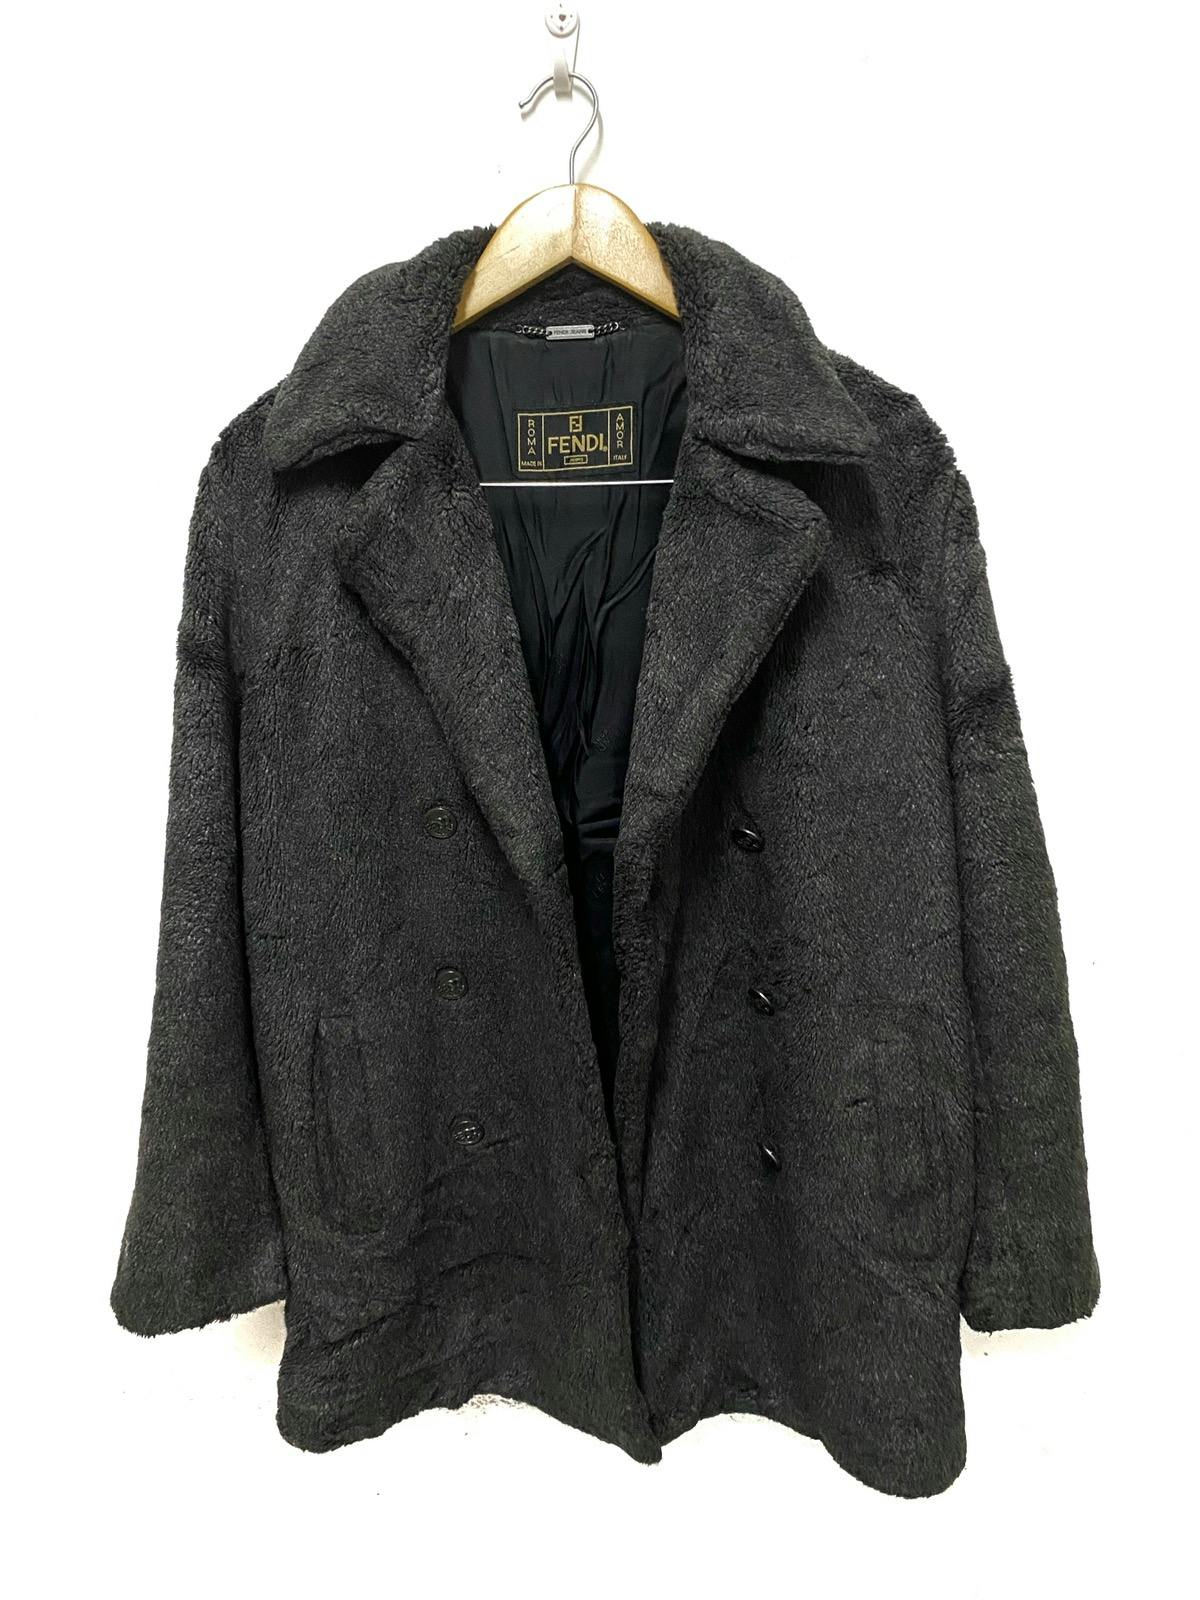 FENDI Jeans Boa Coat/ Fur Jacket Made in Italy - 14